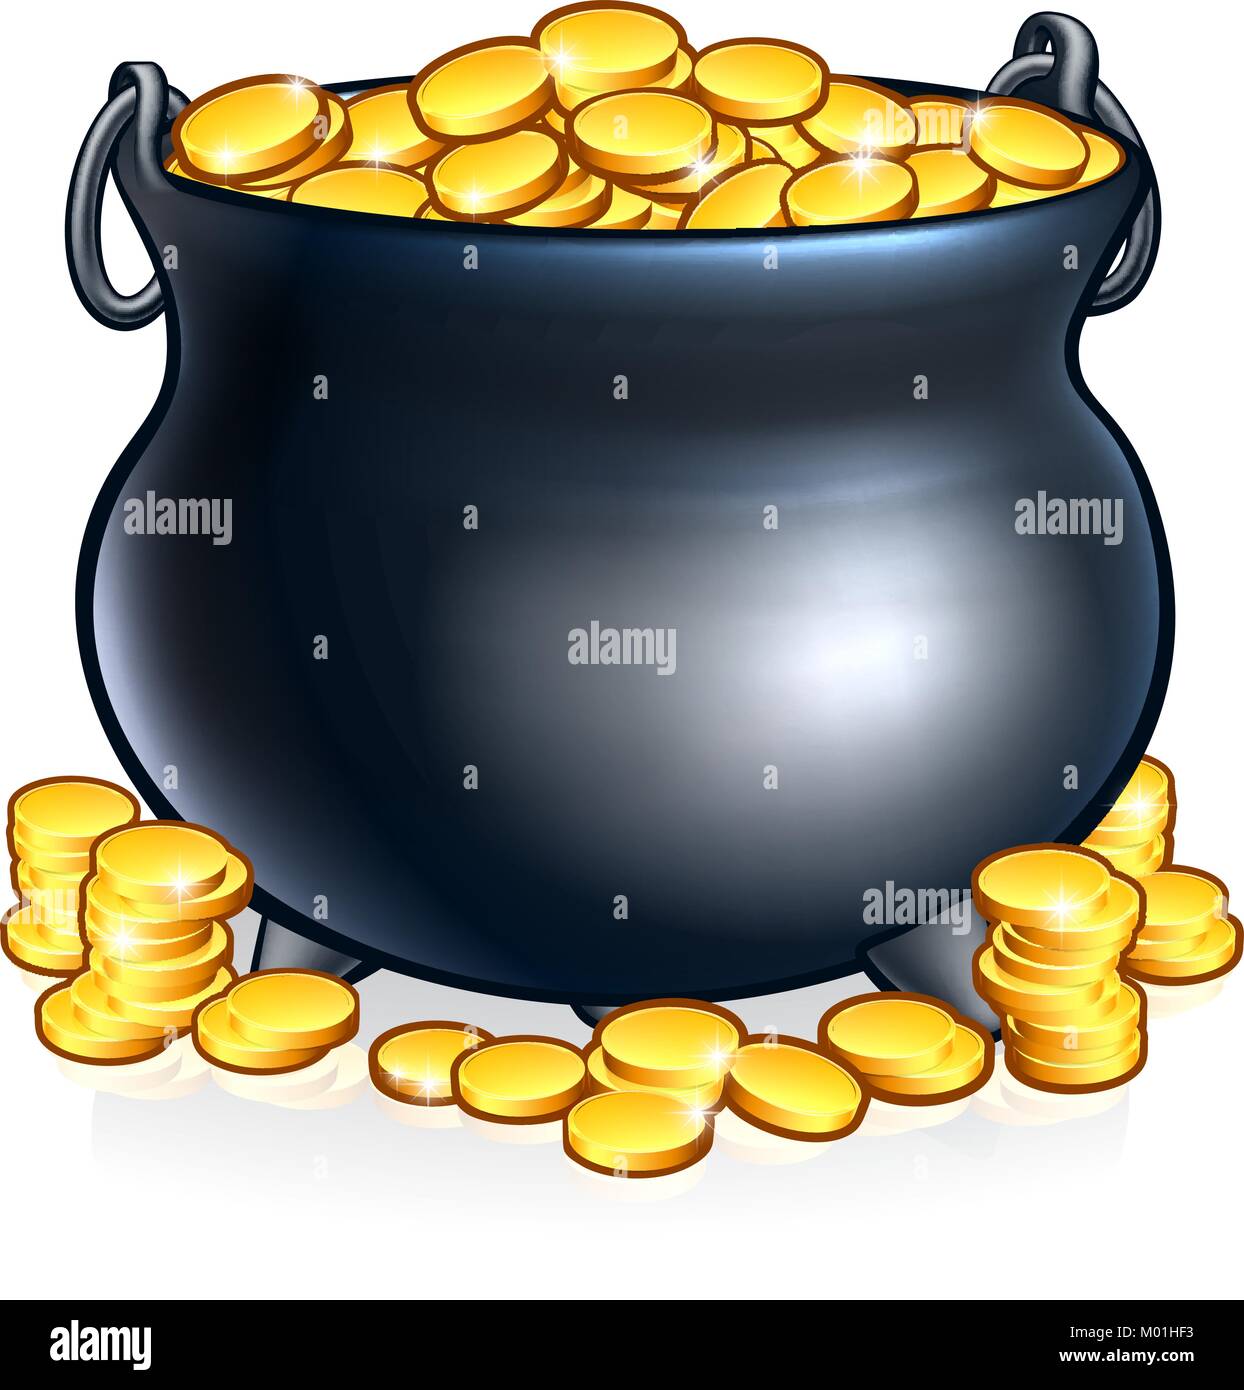 Caldero de monedas de oro Ilustración del Vector